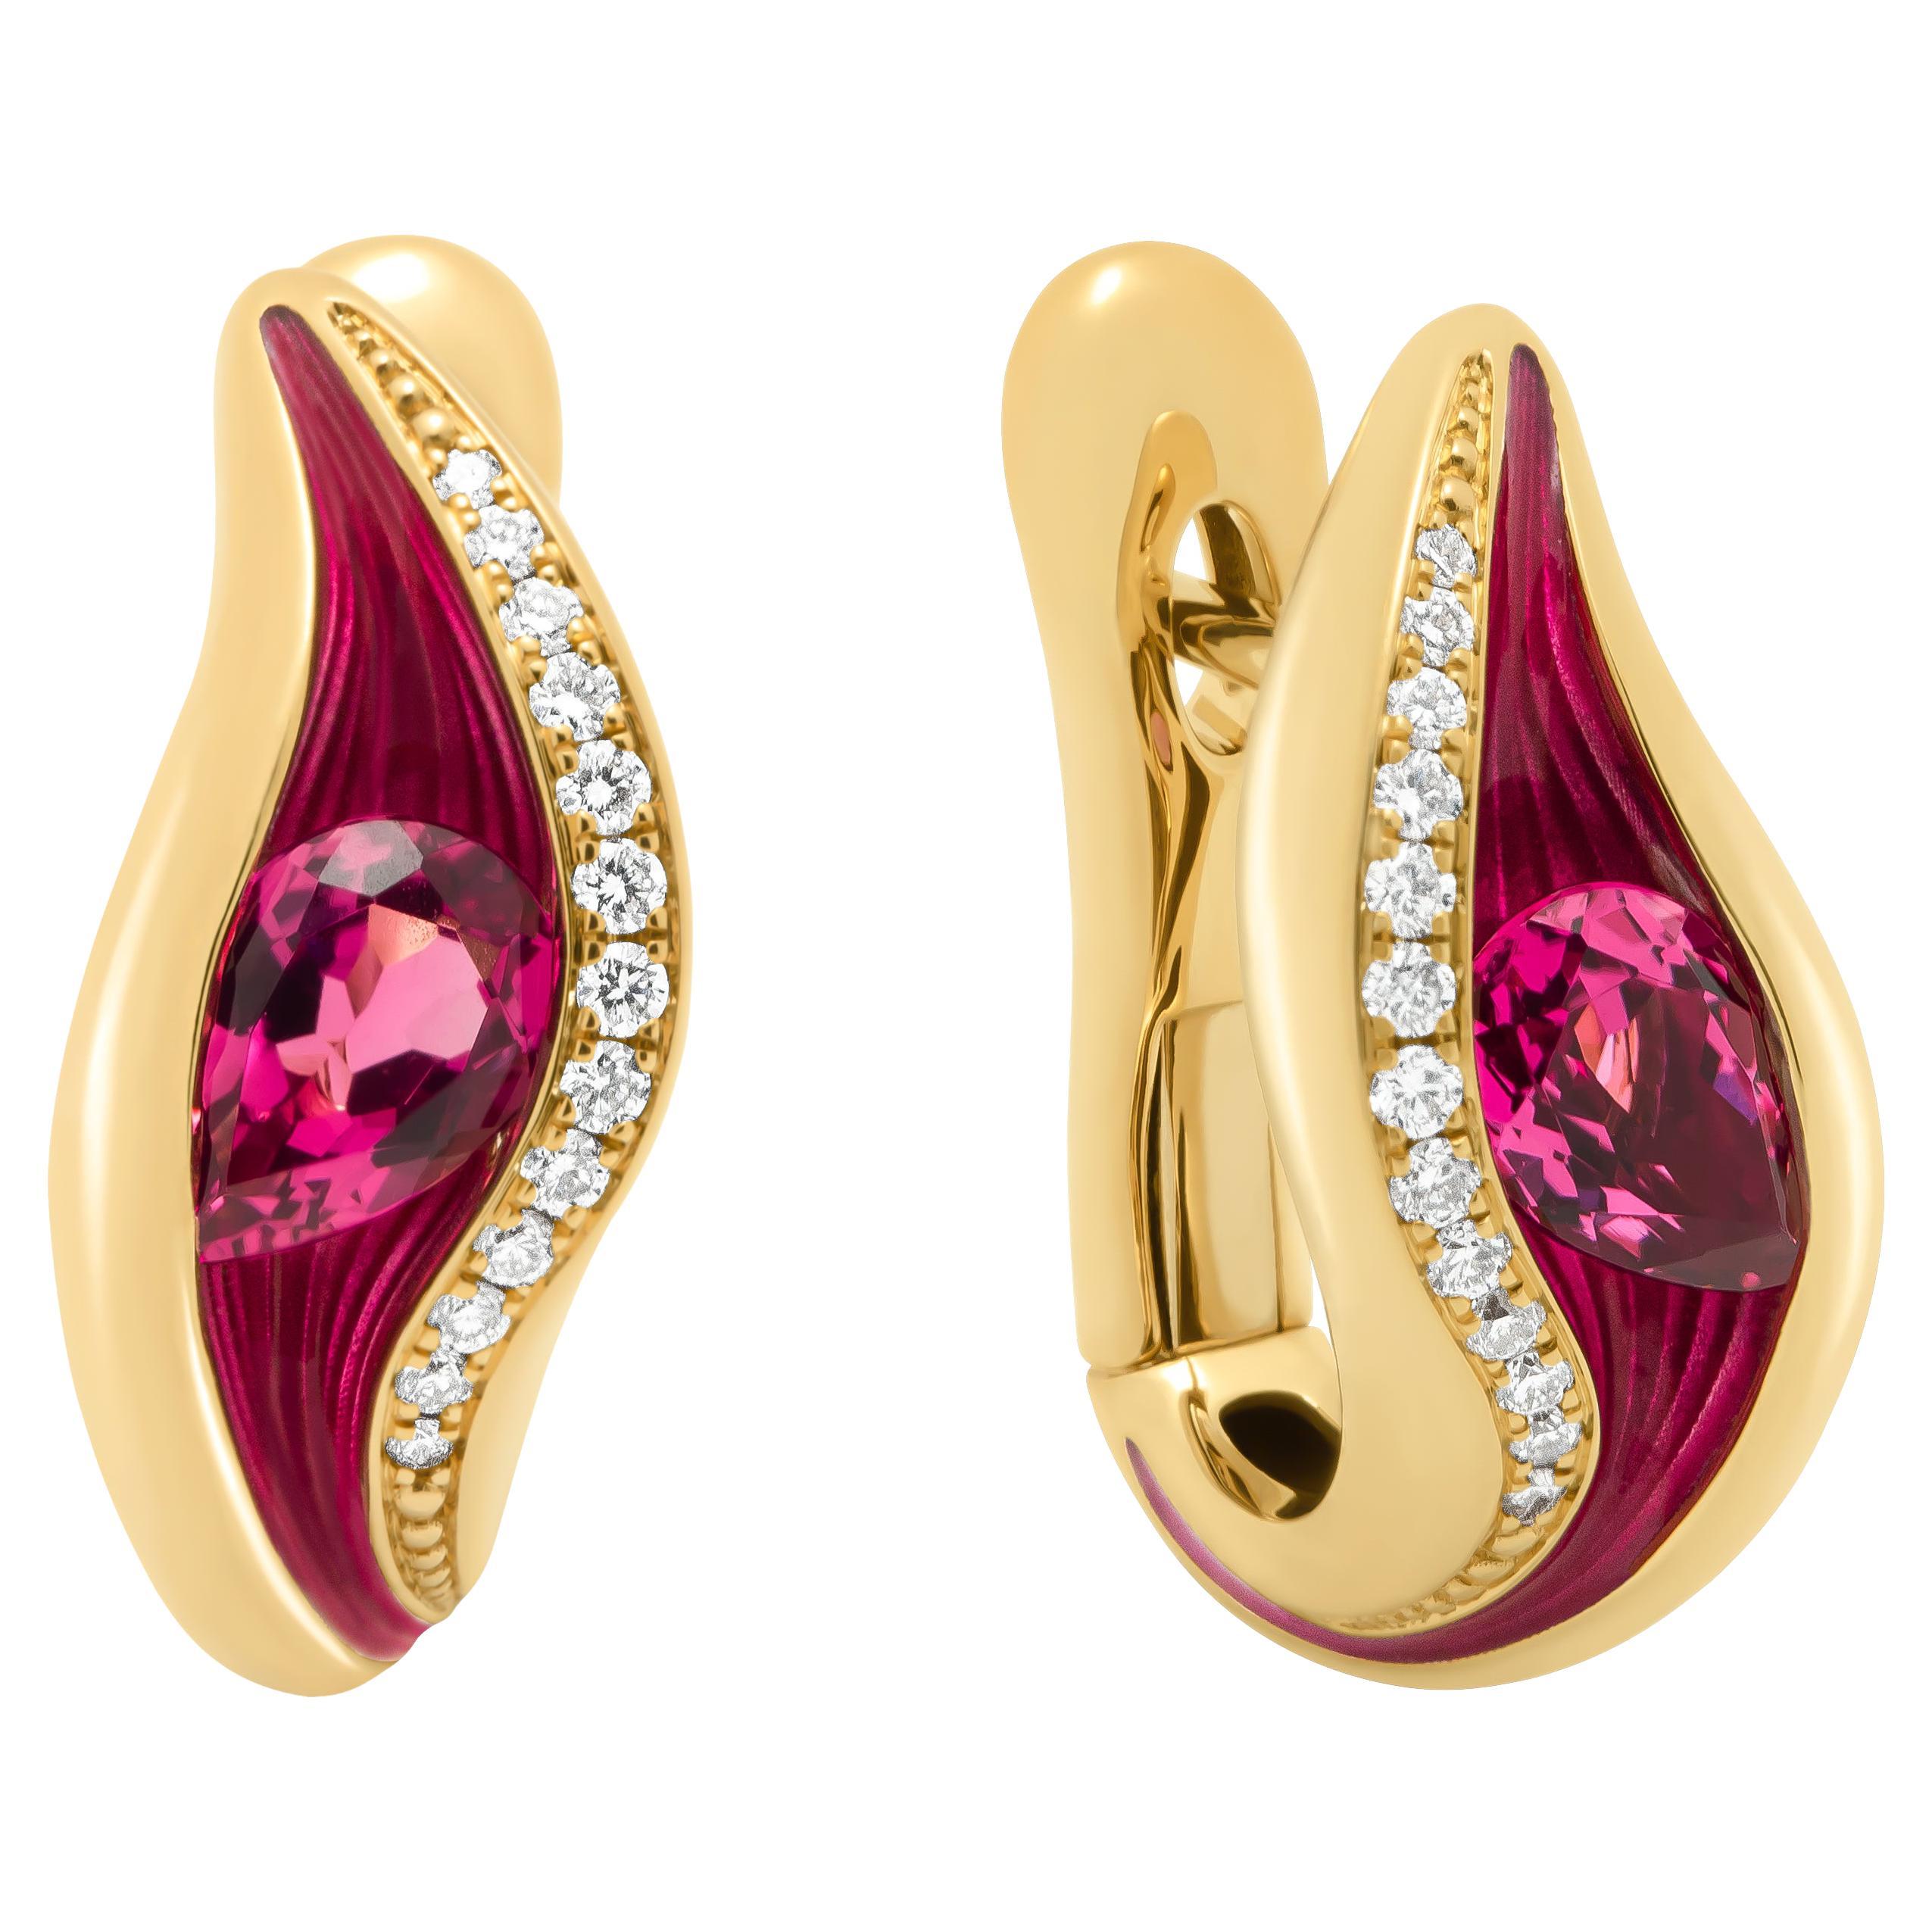 Boucles d'oreilles en or jaune 18 carats avec tourmaline rose, diamants et émail, couleurs fondues